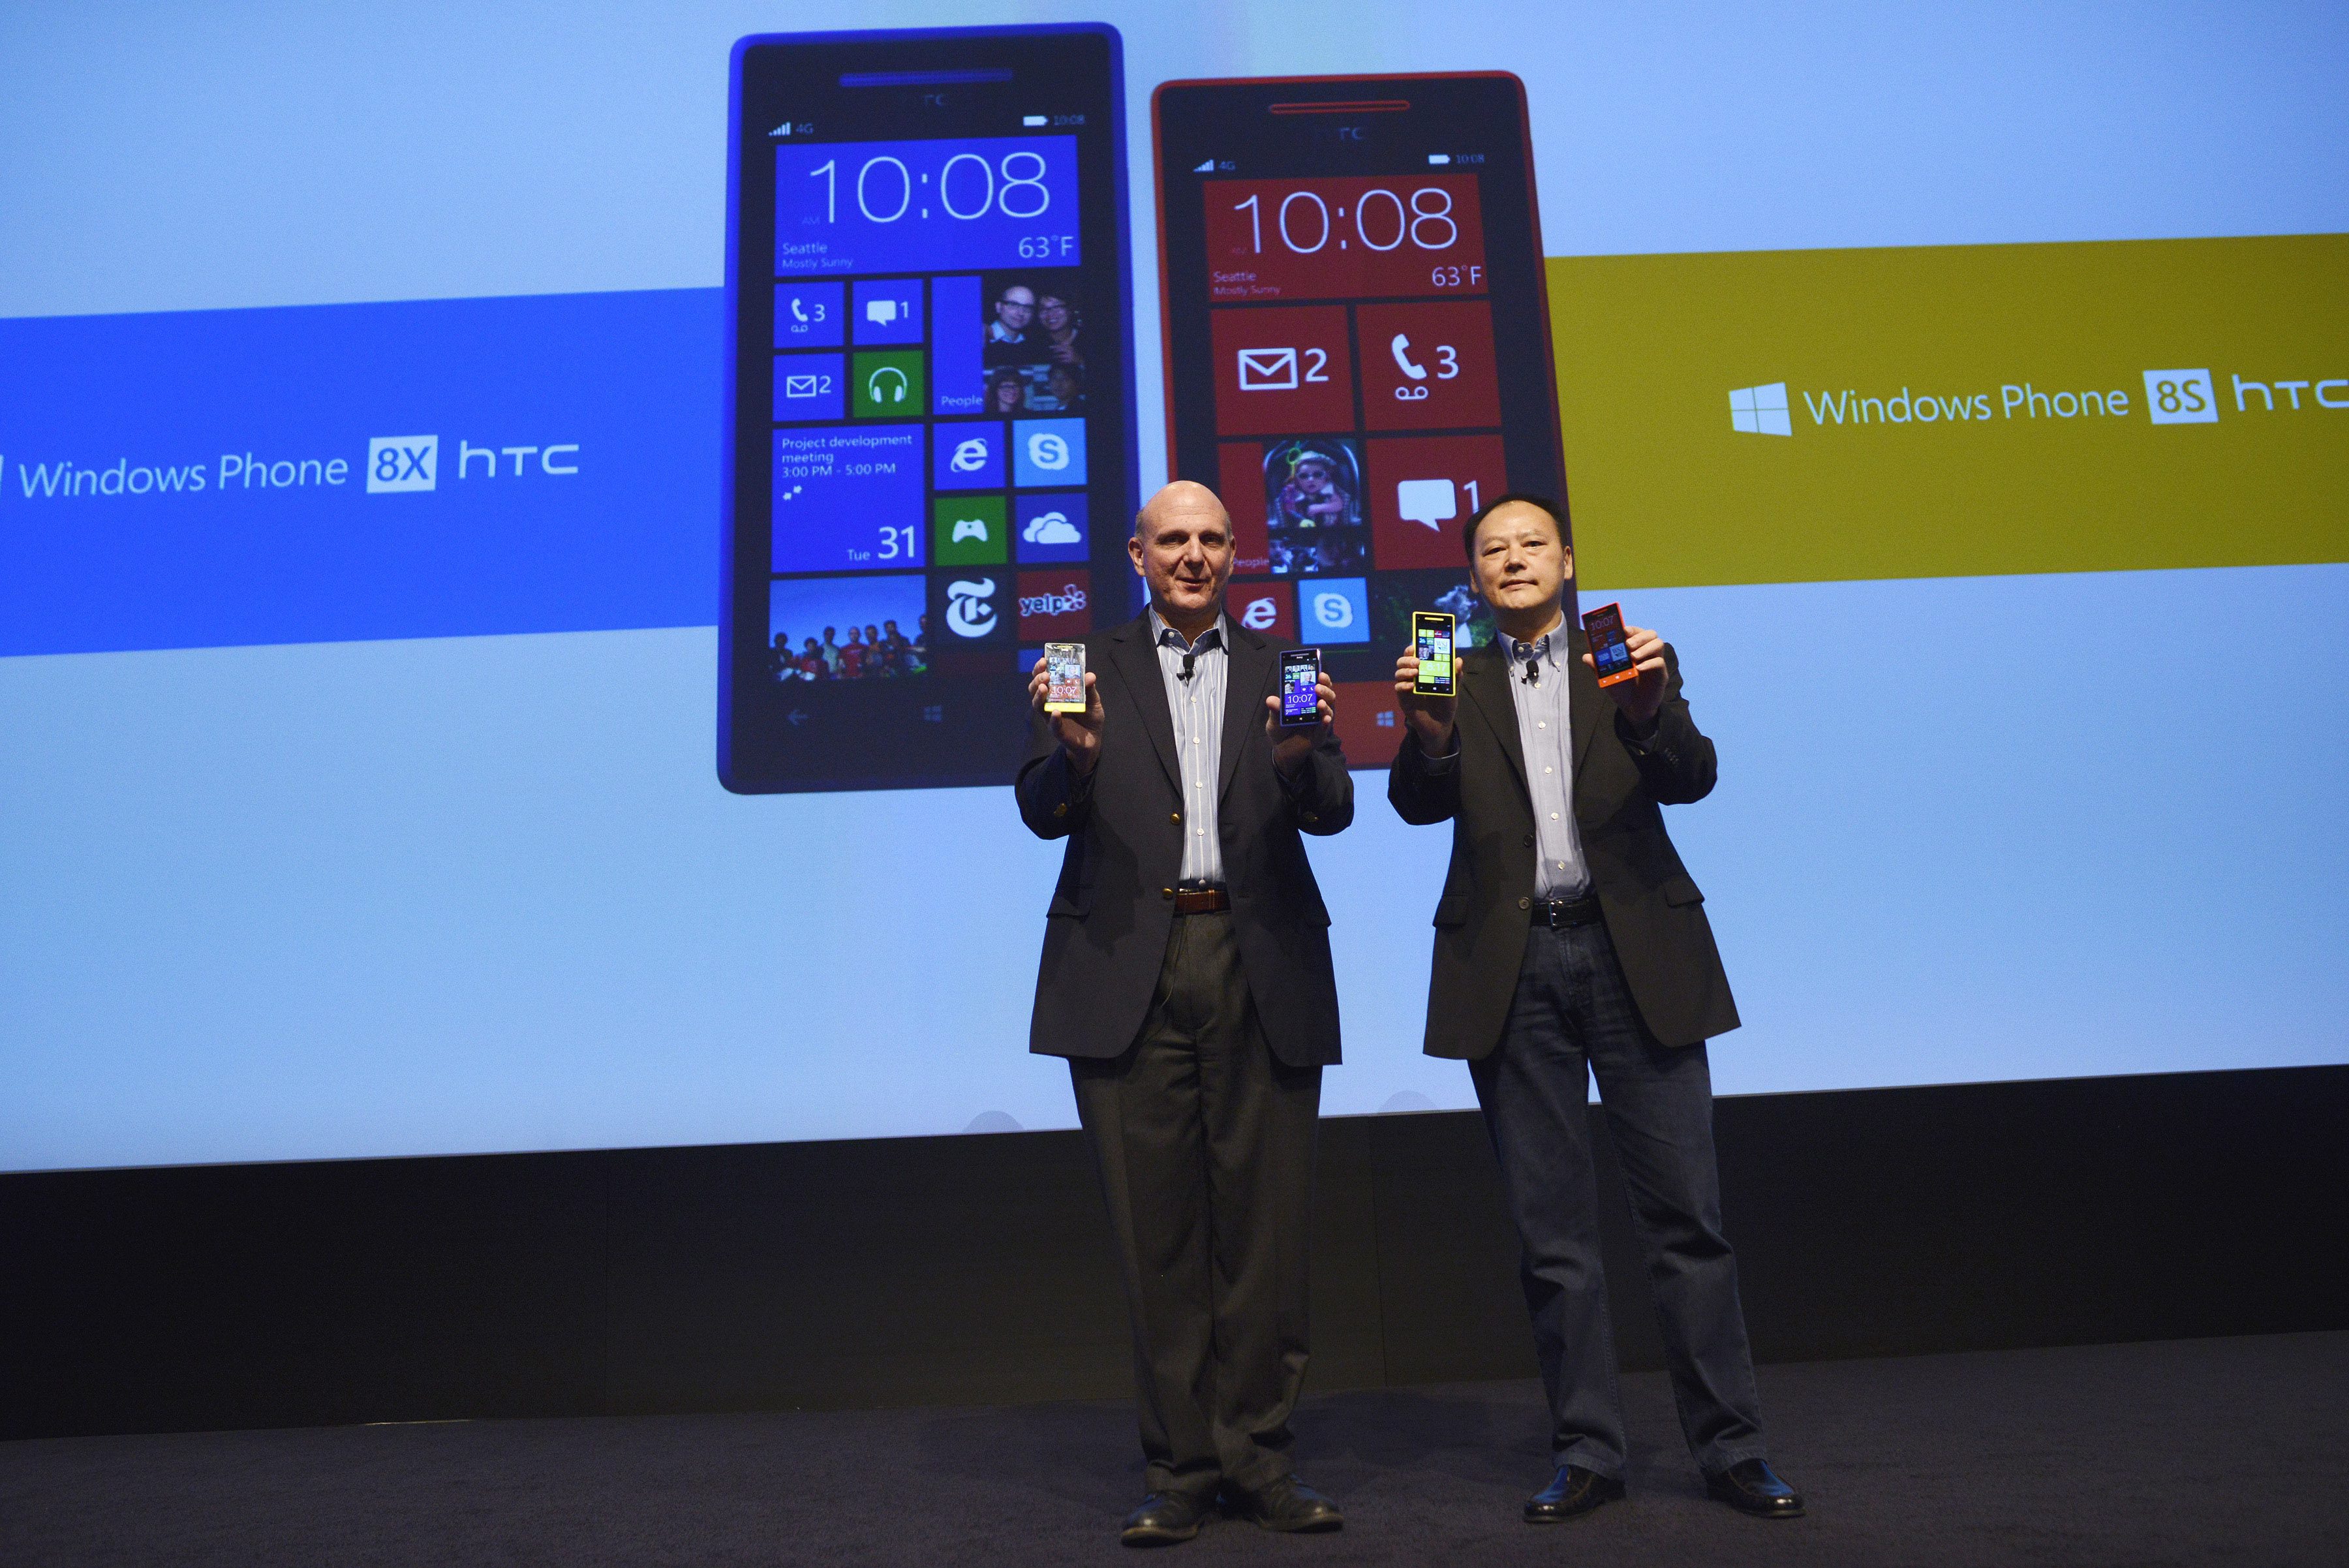 Стив Балмър (CEO Microsoft) и Питър Чоу (CEO HTC) представят новите смартфони Windows Phone 8X и 8S